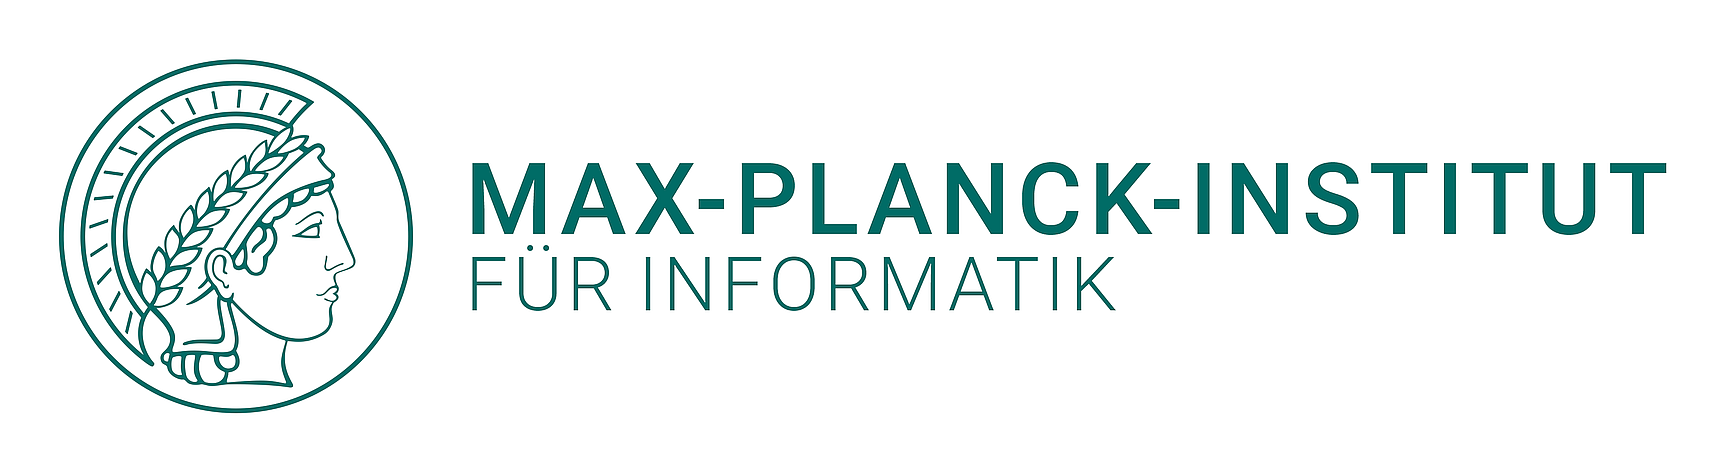 Logo: Max-Planck-Institut für Informatik